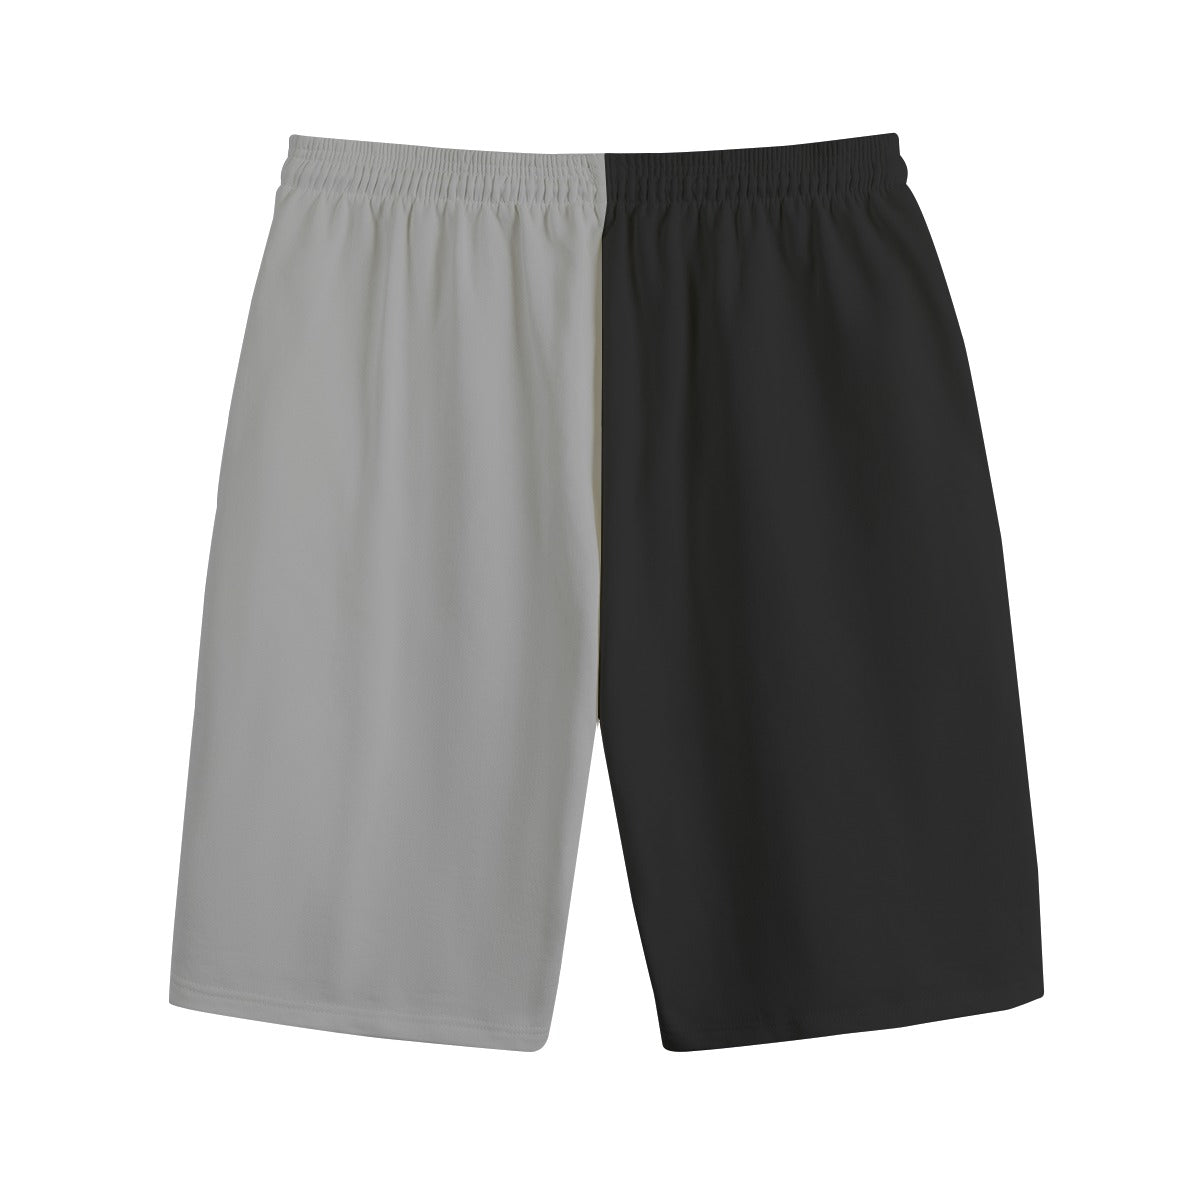 - AM&IS Color Block Men's Shorts | 100% Cotton - mens shorts at TFC&H Co.